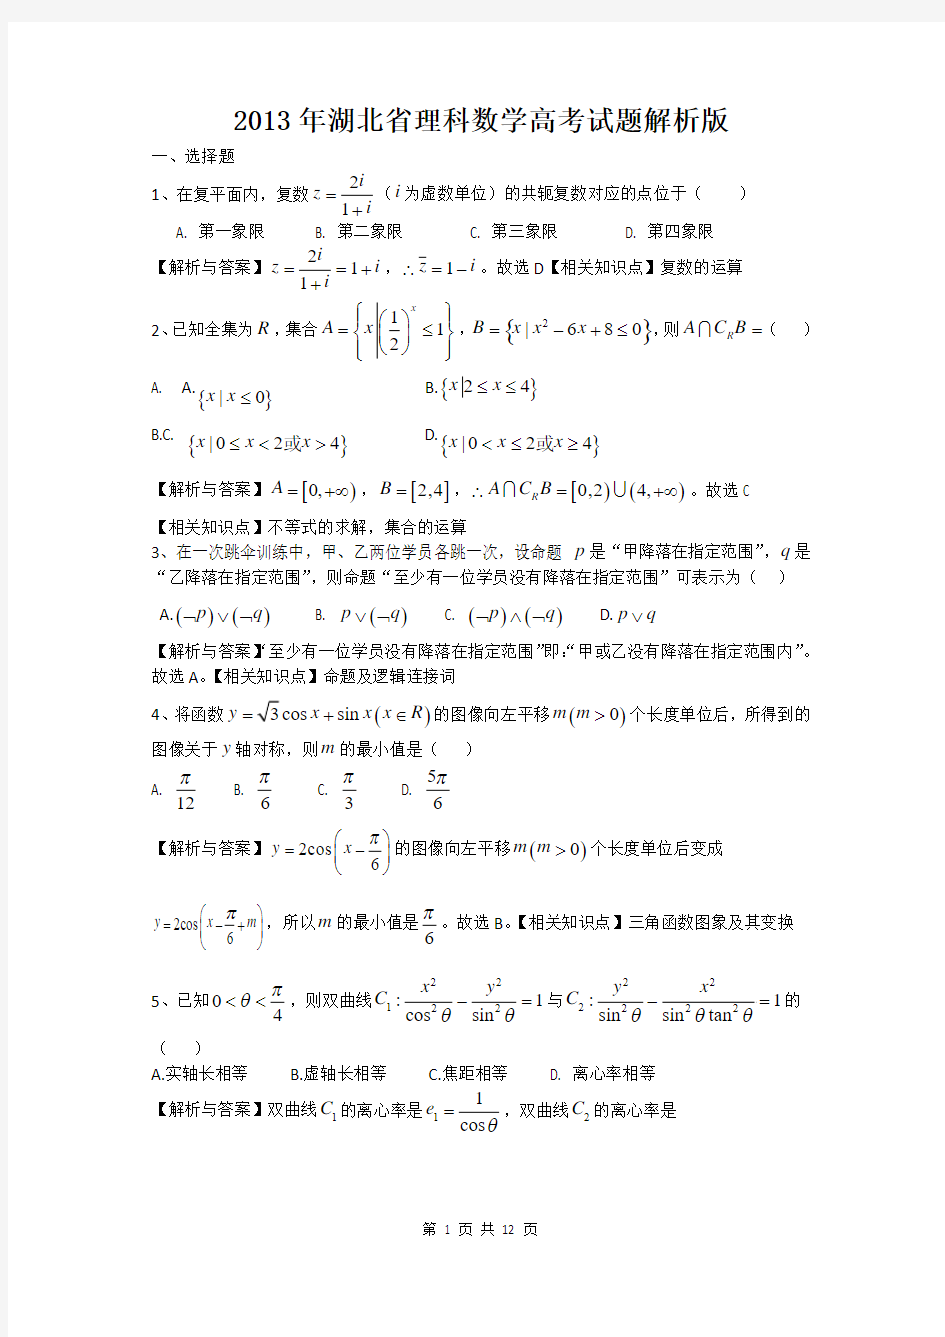 2013年高考真题解析湖北(理科)数学解析版 Word版含每题详细答案精校版